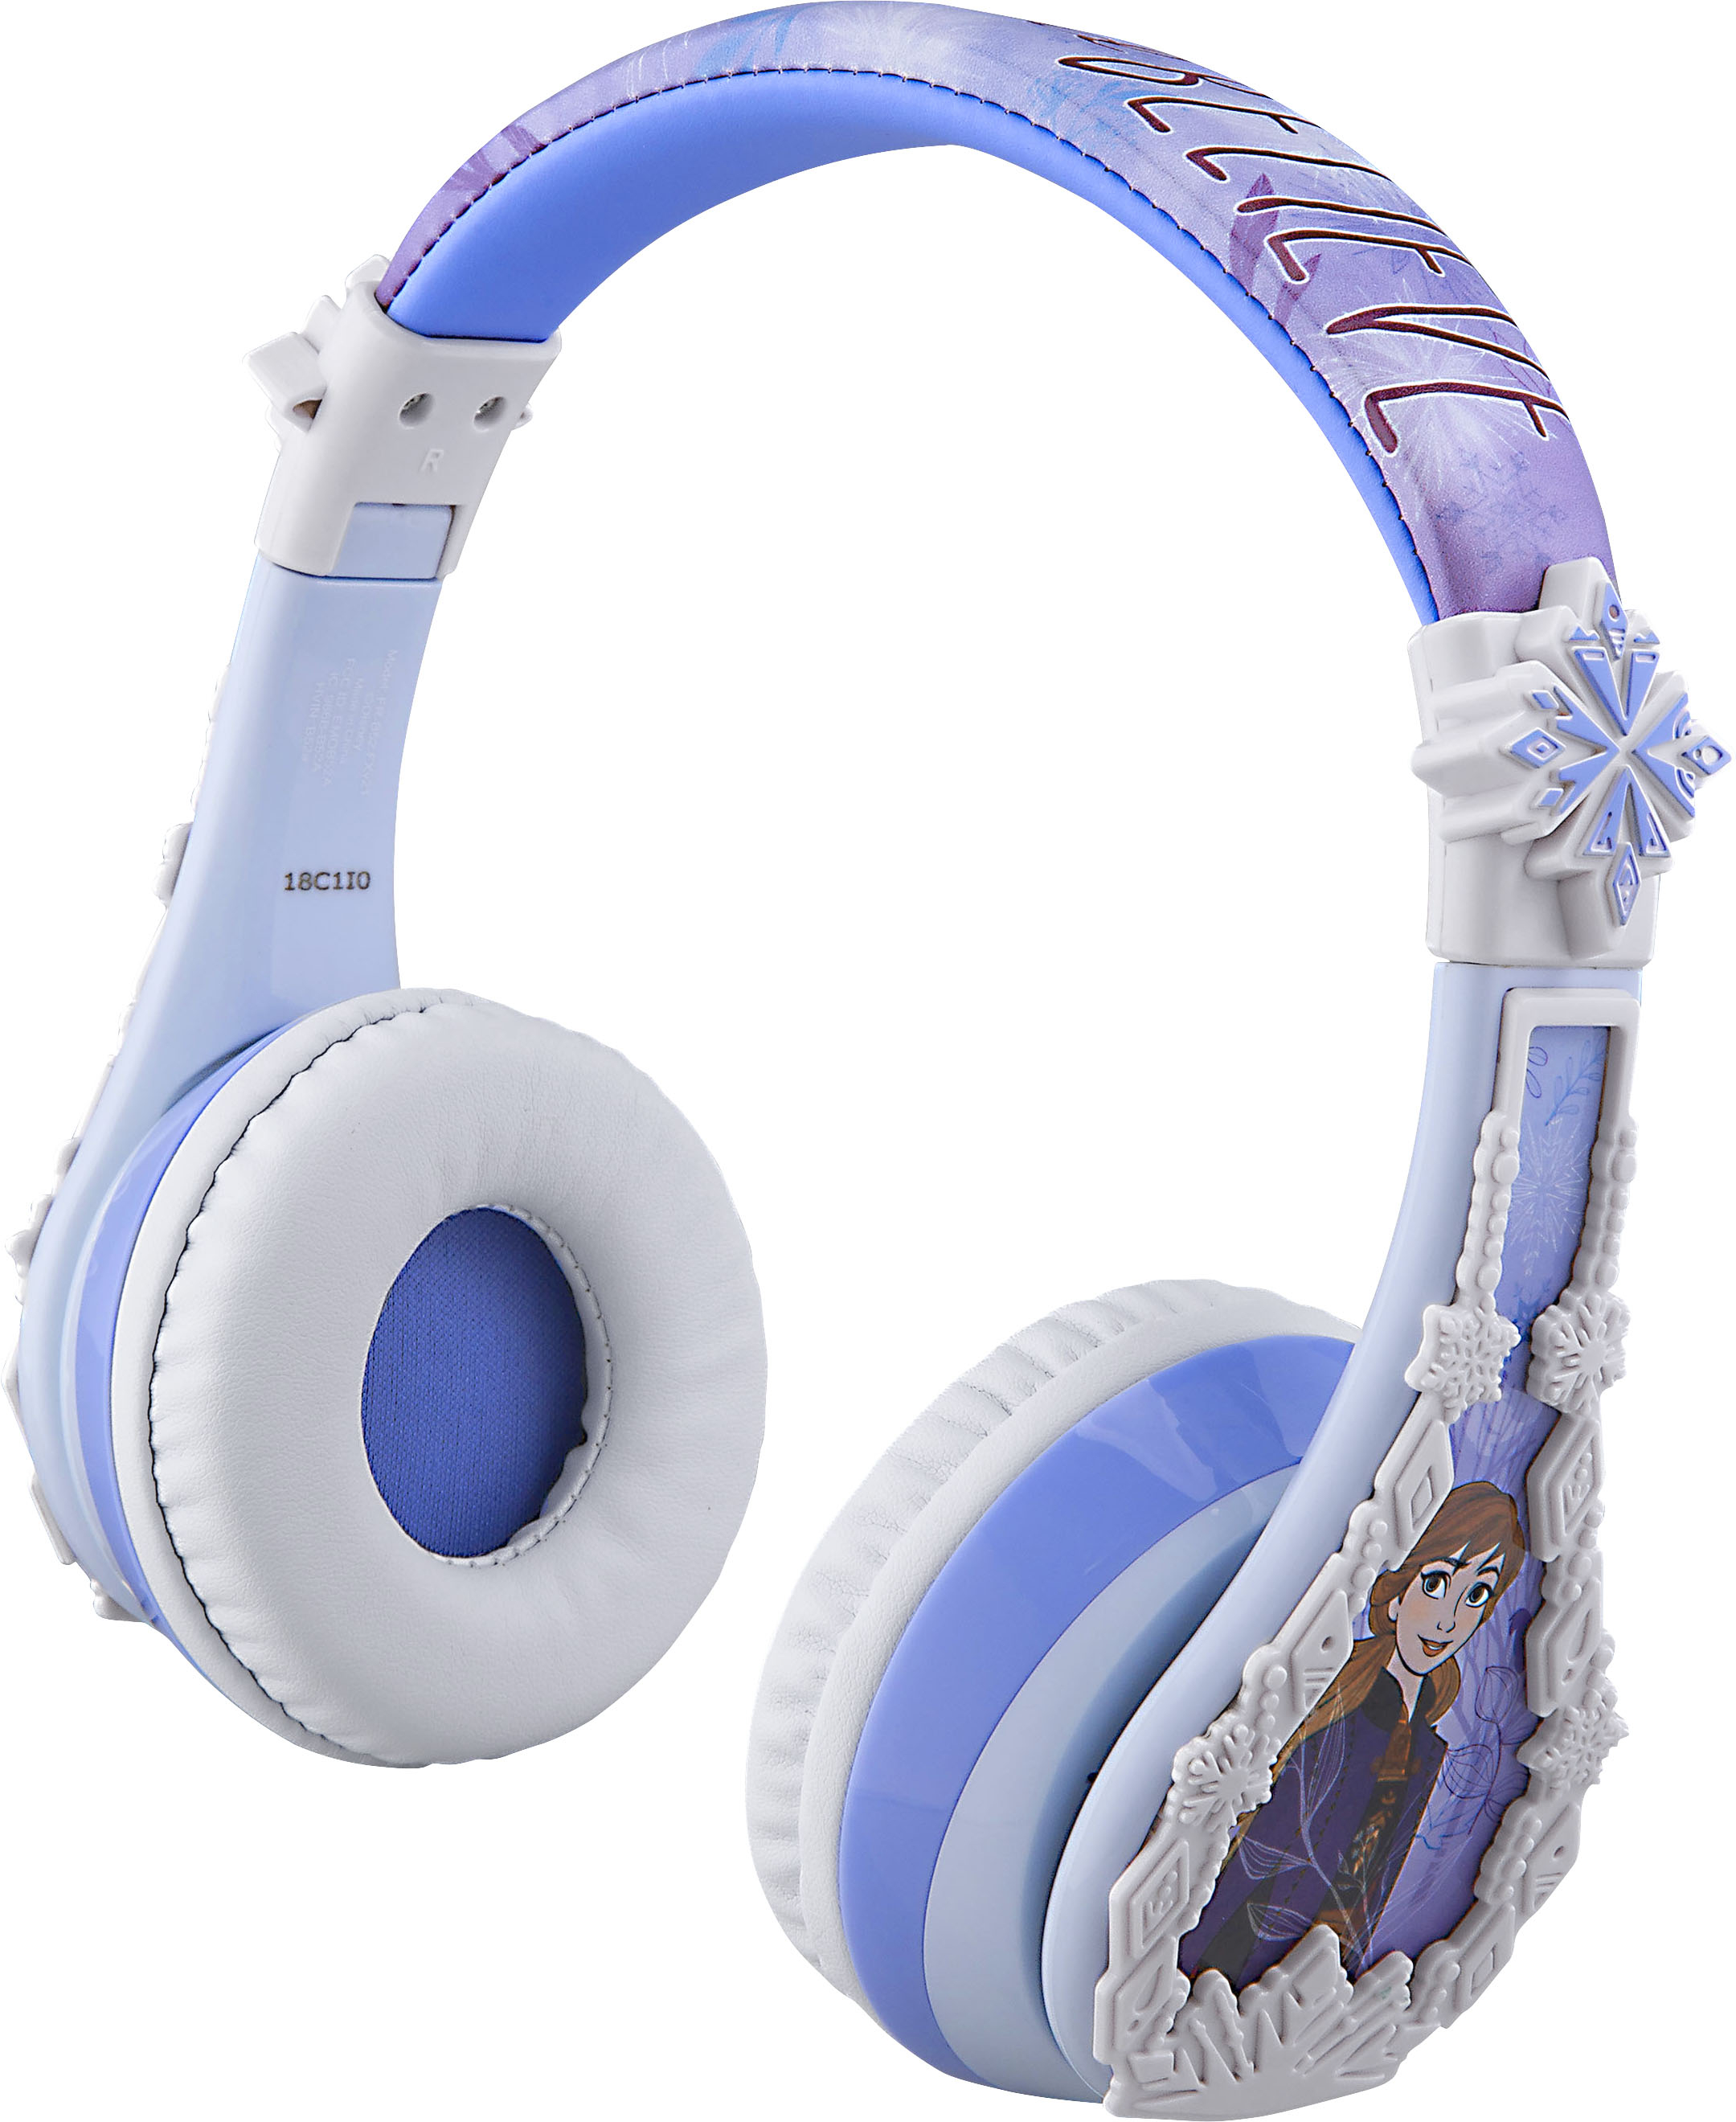 Angle View: eKids - Disney Frozen Bluetooth Headphones - light blue